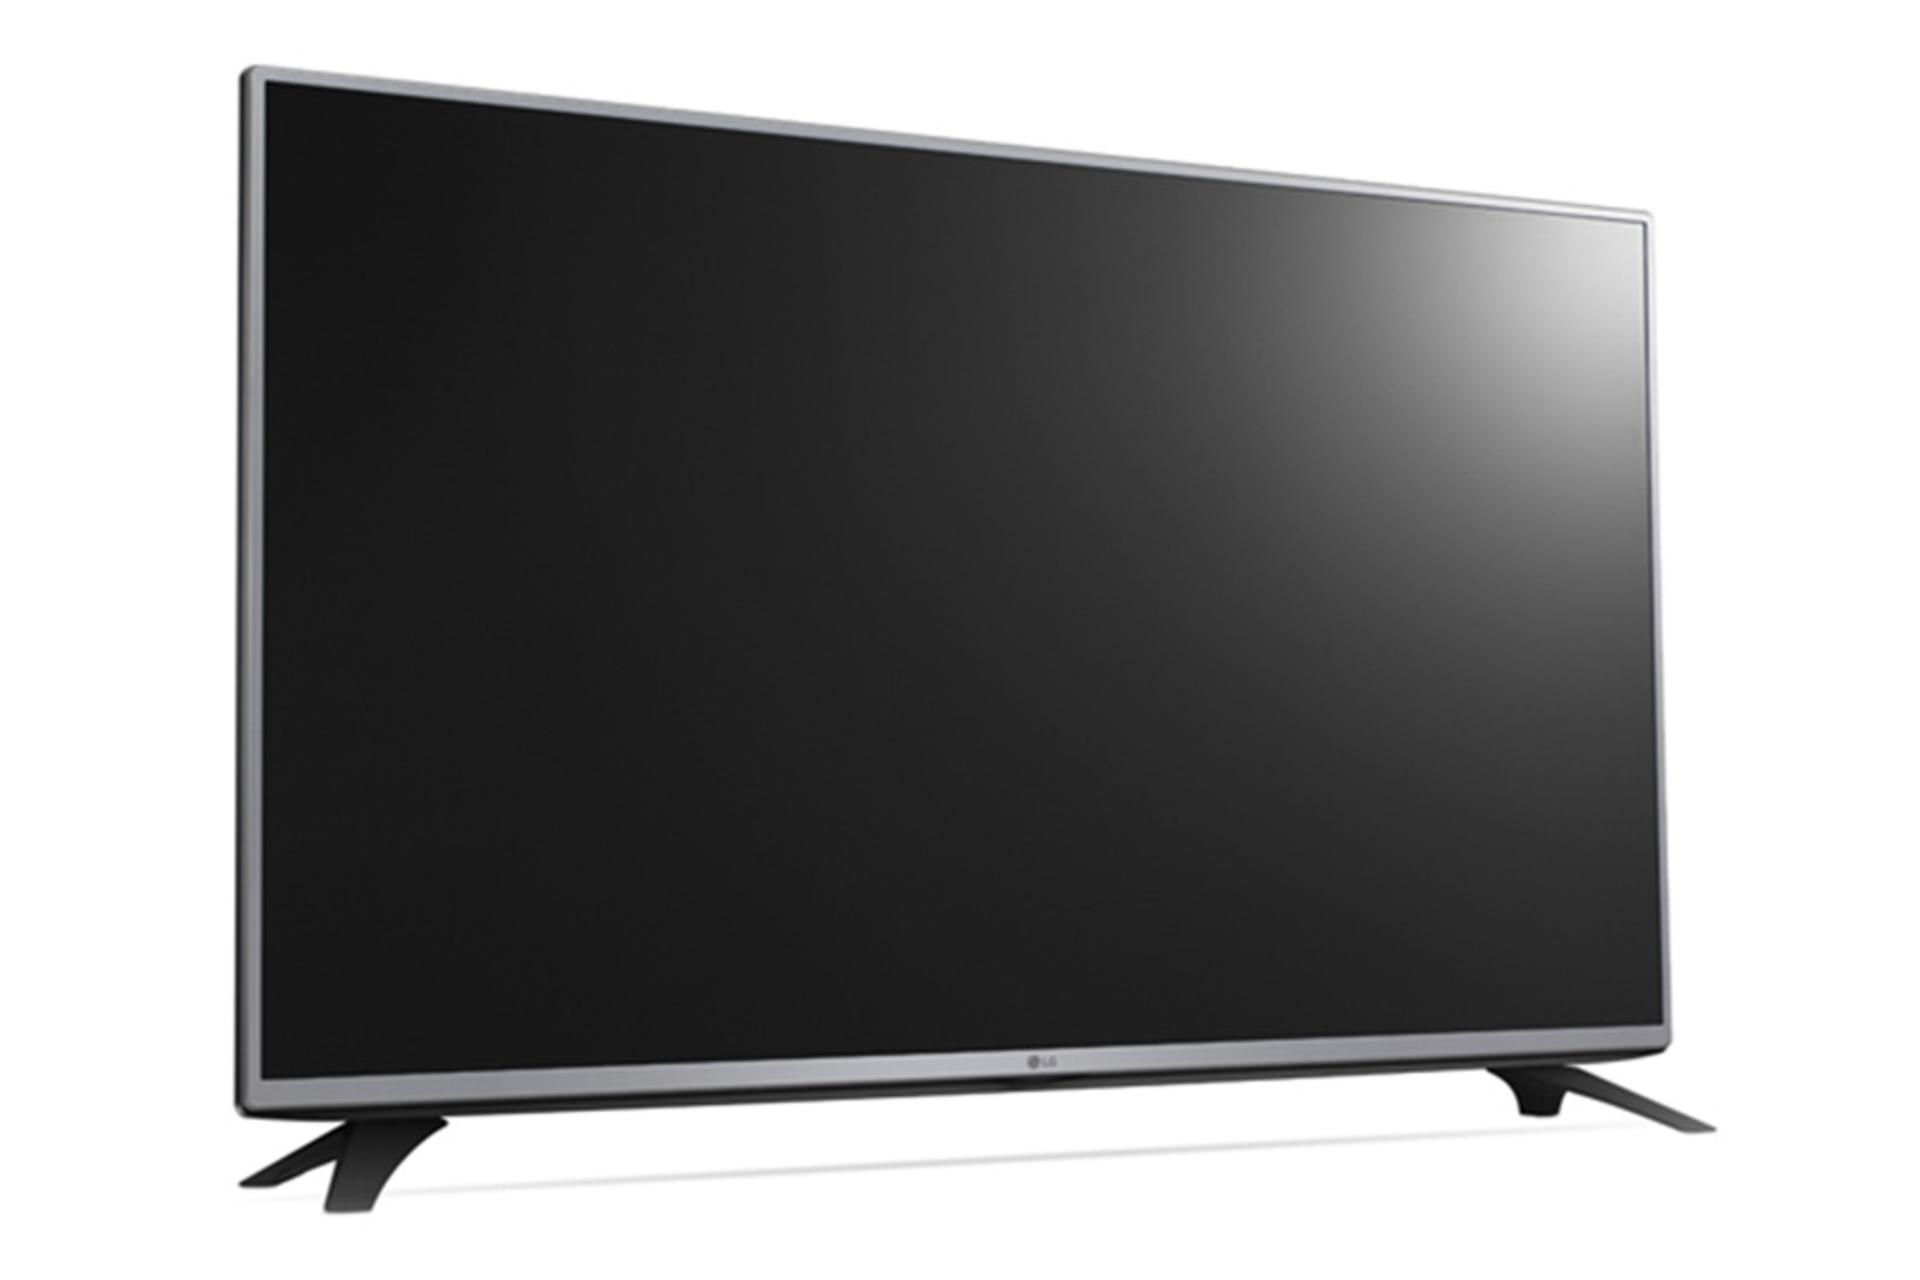 نمای نیم رخ چپ تلویزیون ال جی LF540T مدل 43 اینچ با صفحه خاموش